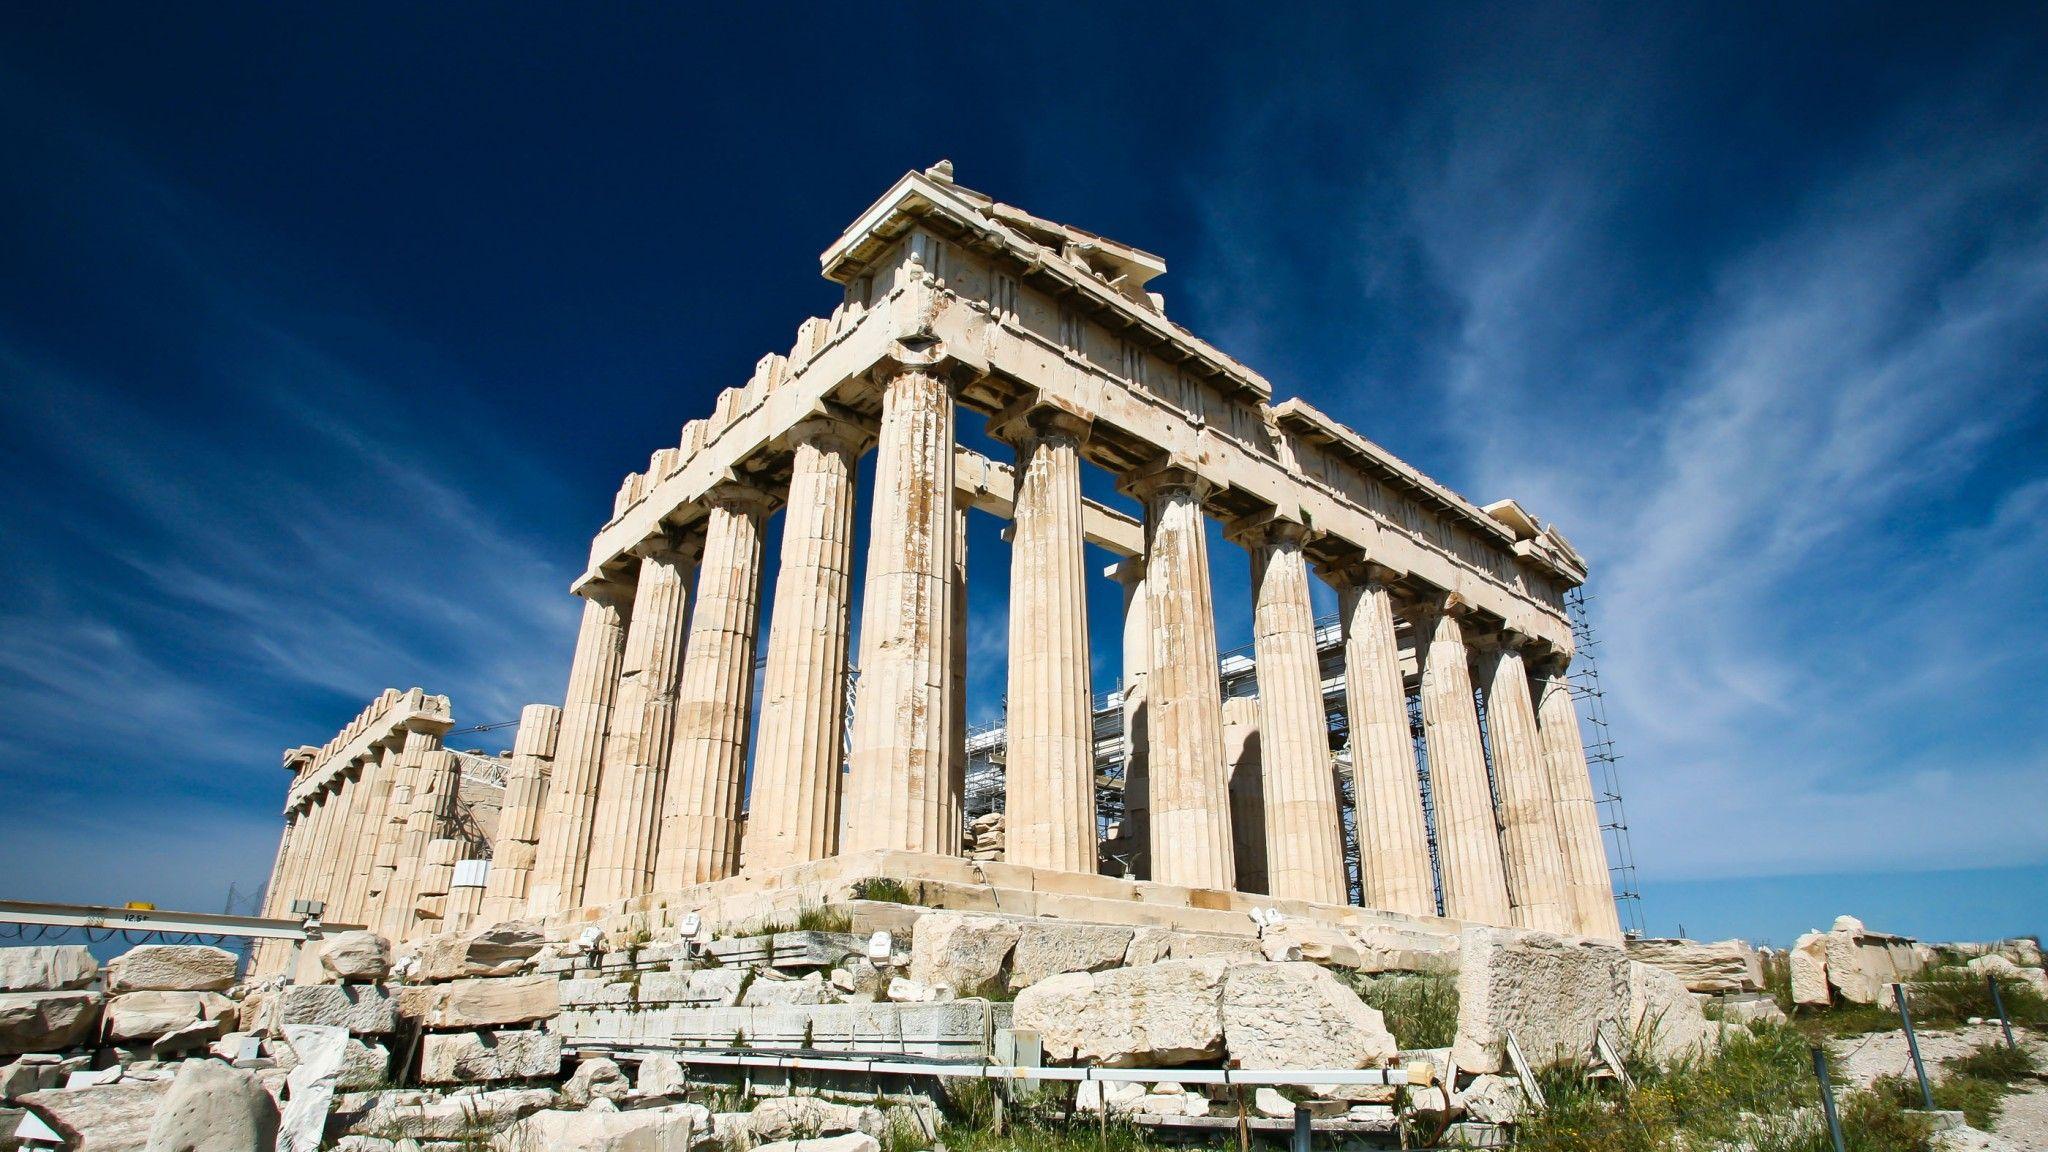 Athens Ruins On Acropolis HQ for PC桌布壁纸2048x1152 - 热门壁纸网